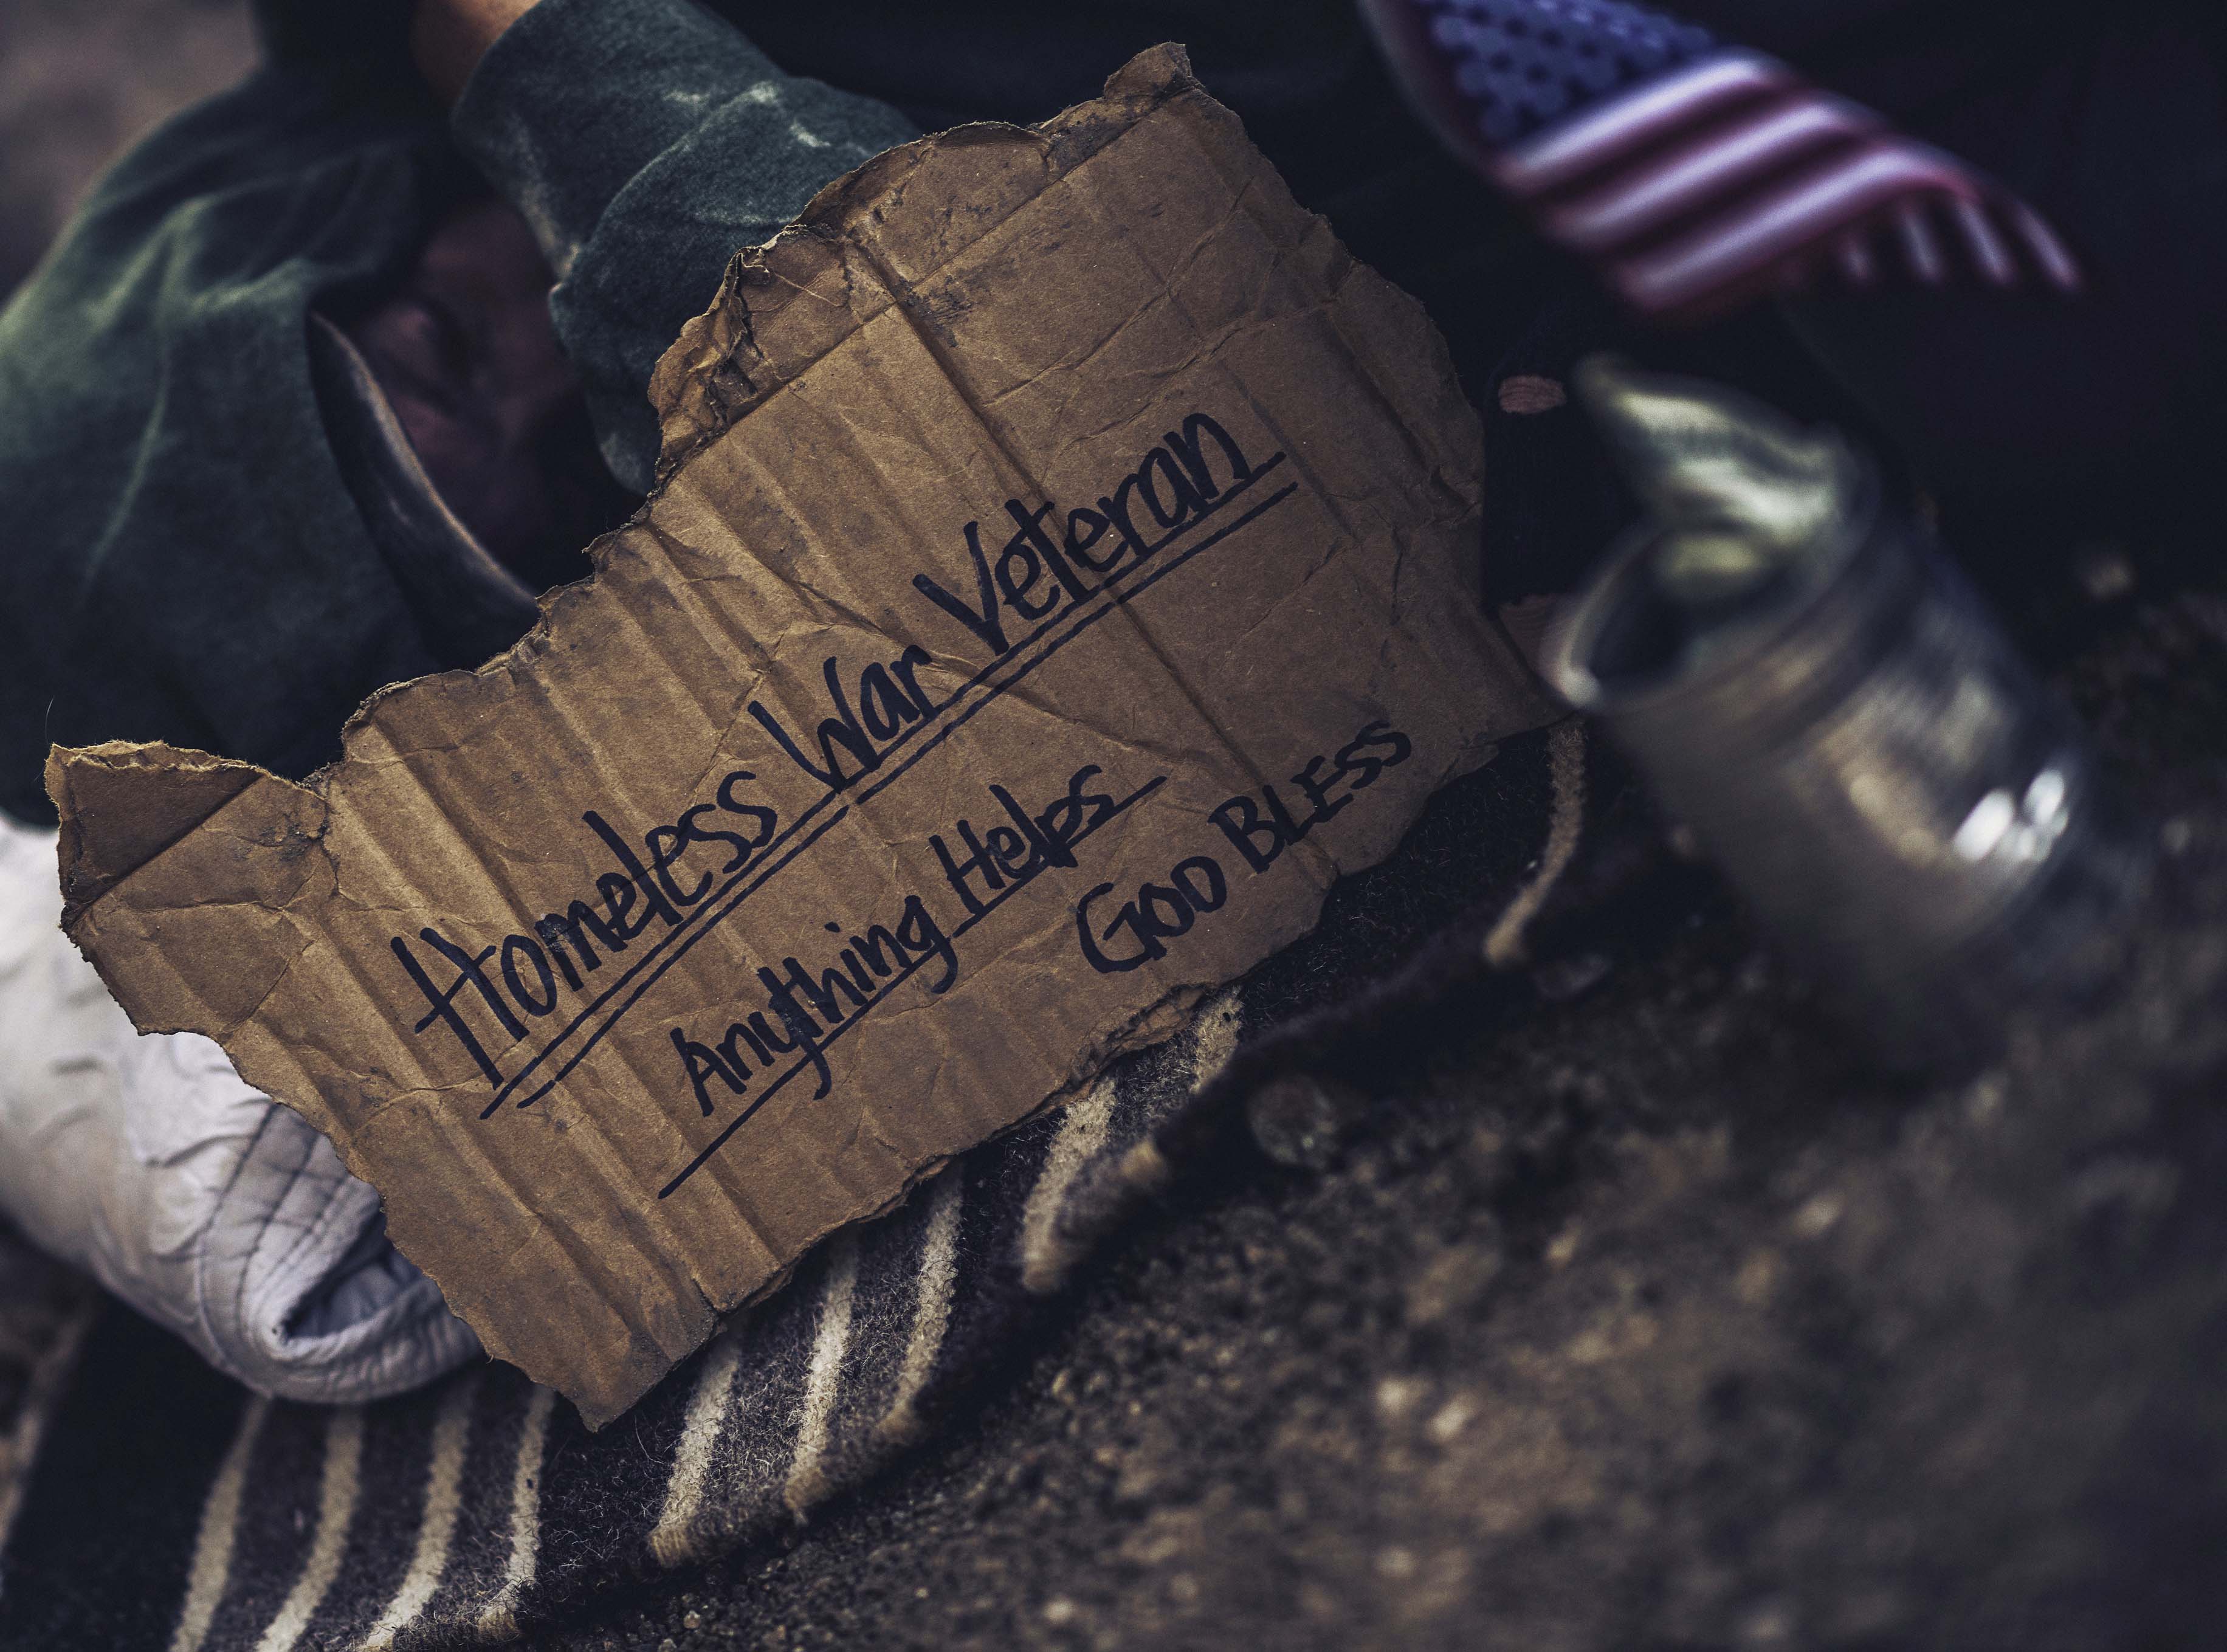 homeless veteran holding sign